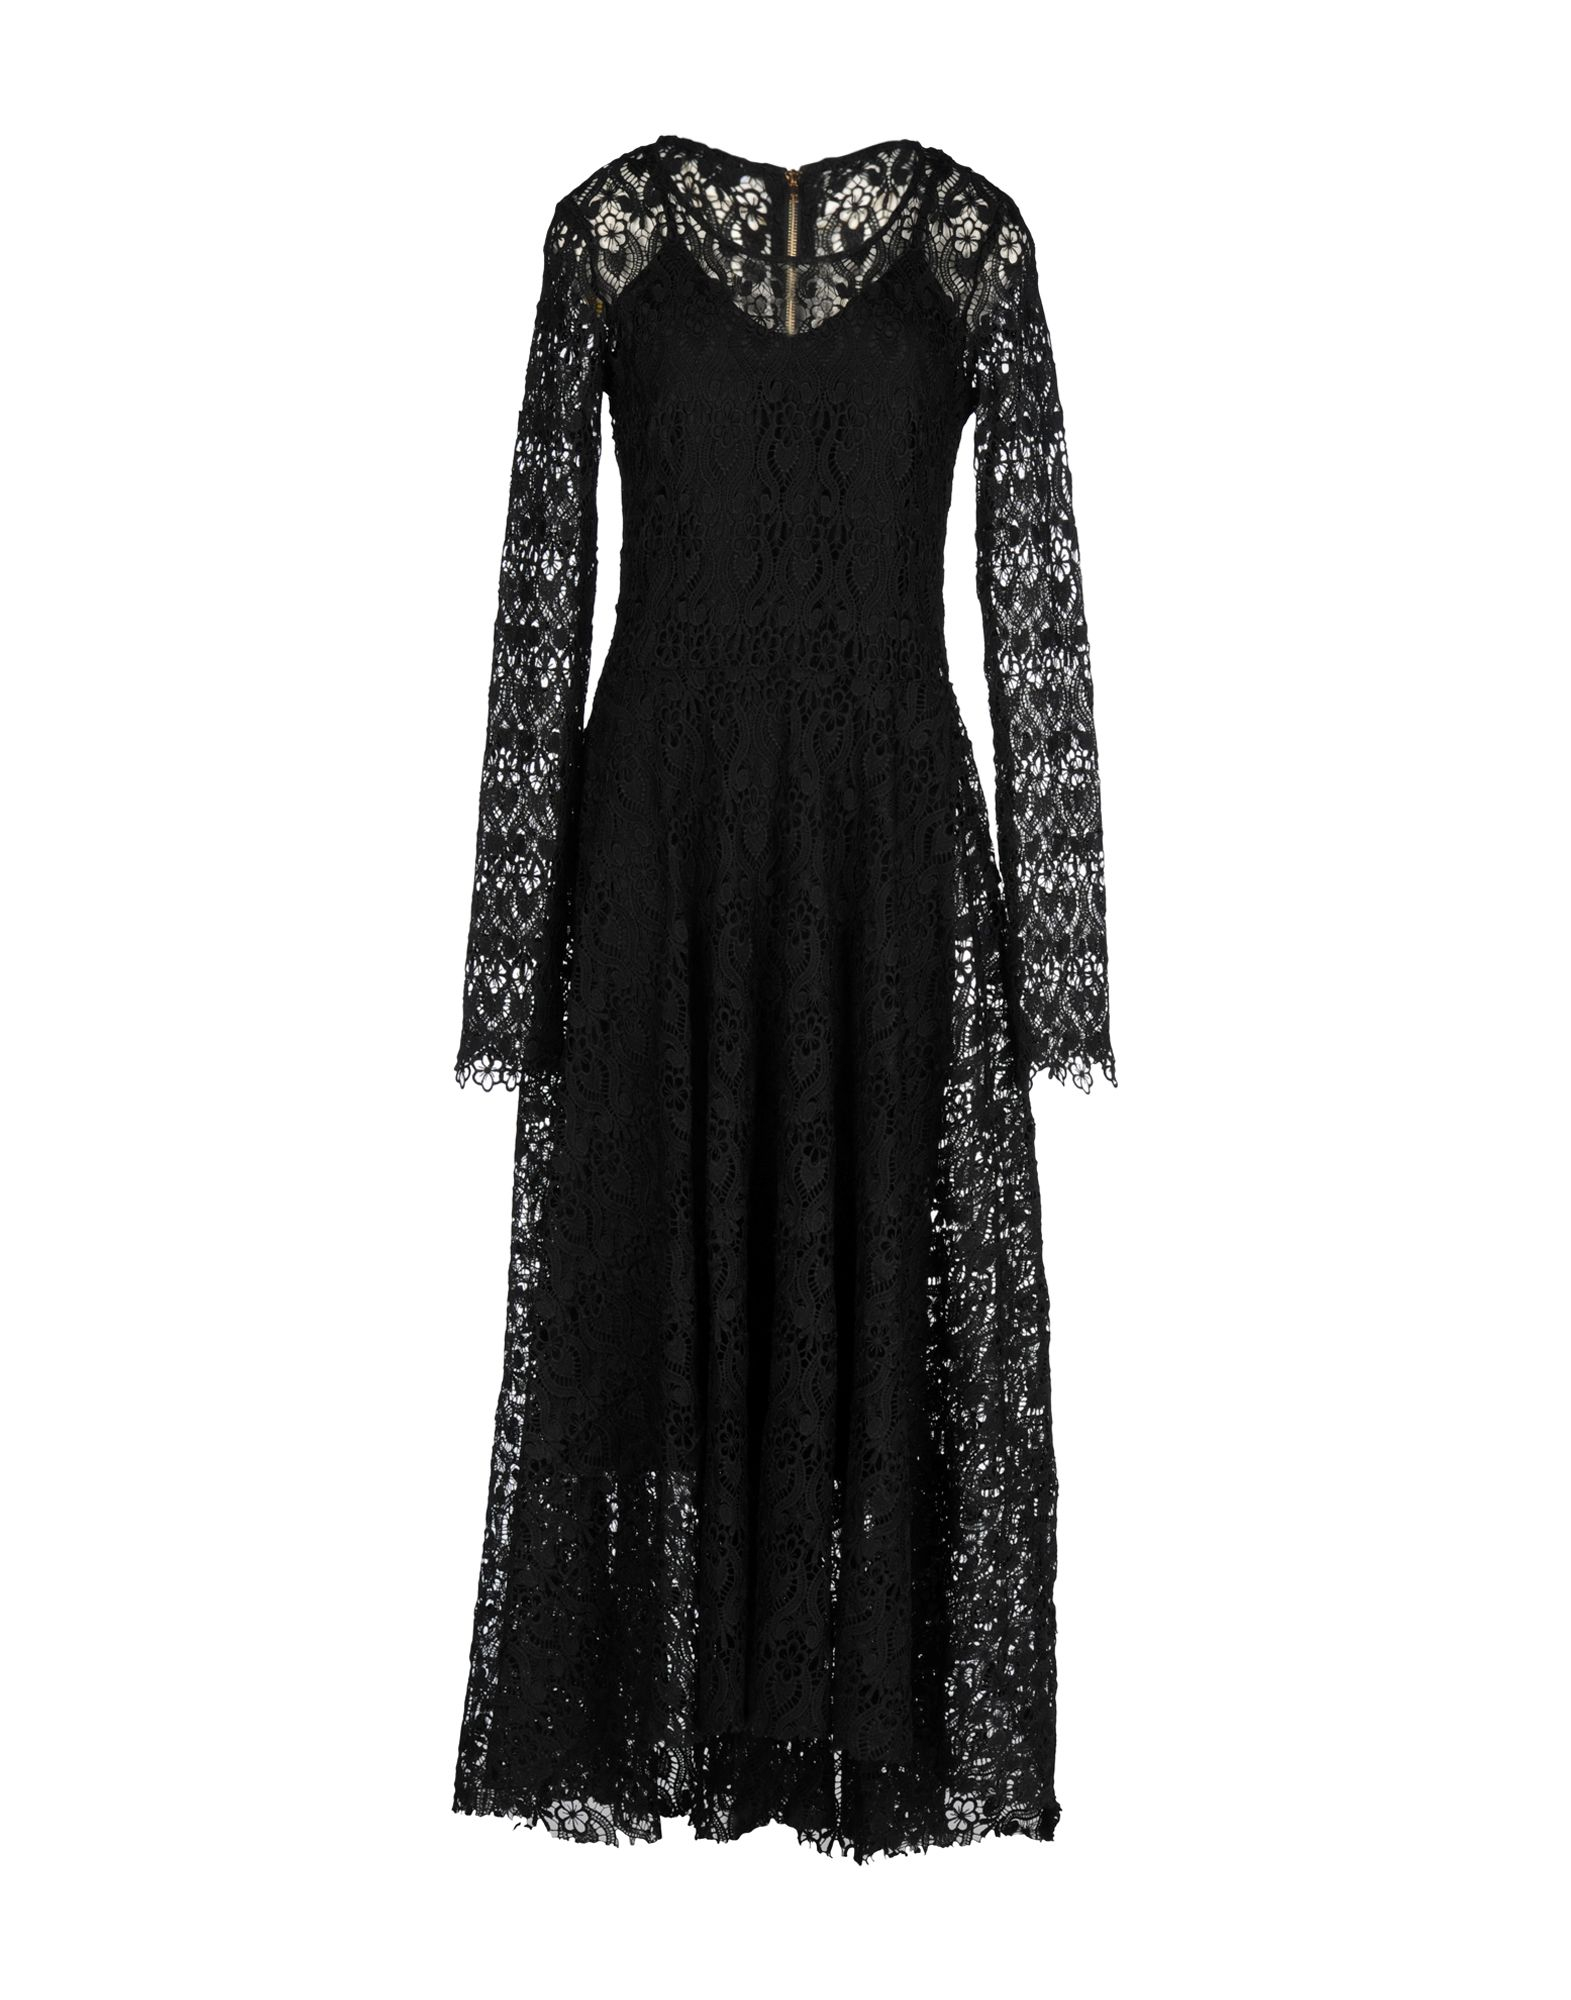 Brigitte bardot Long Dress in Black | Lyst